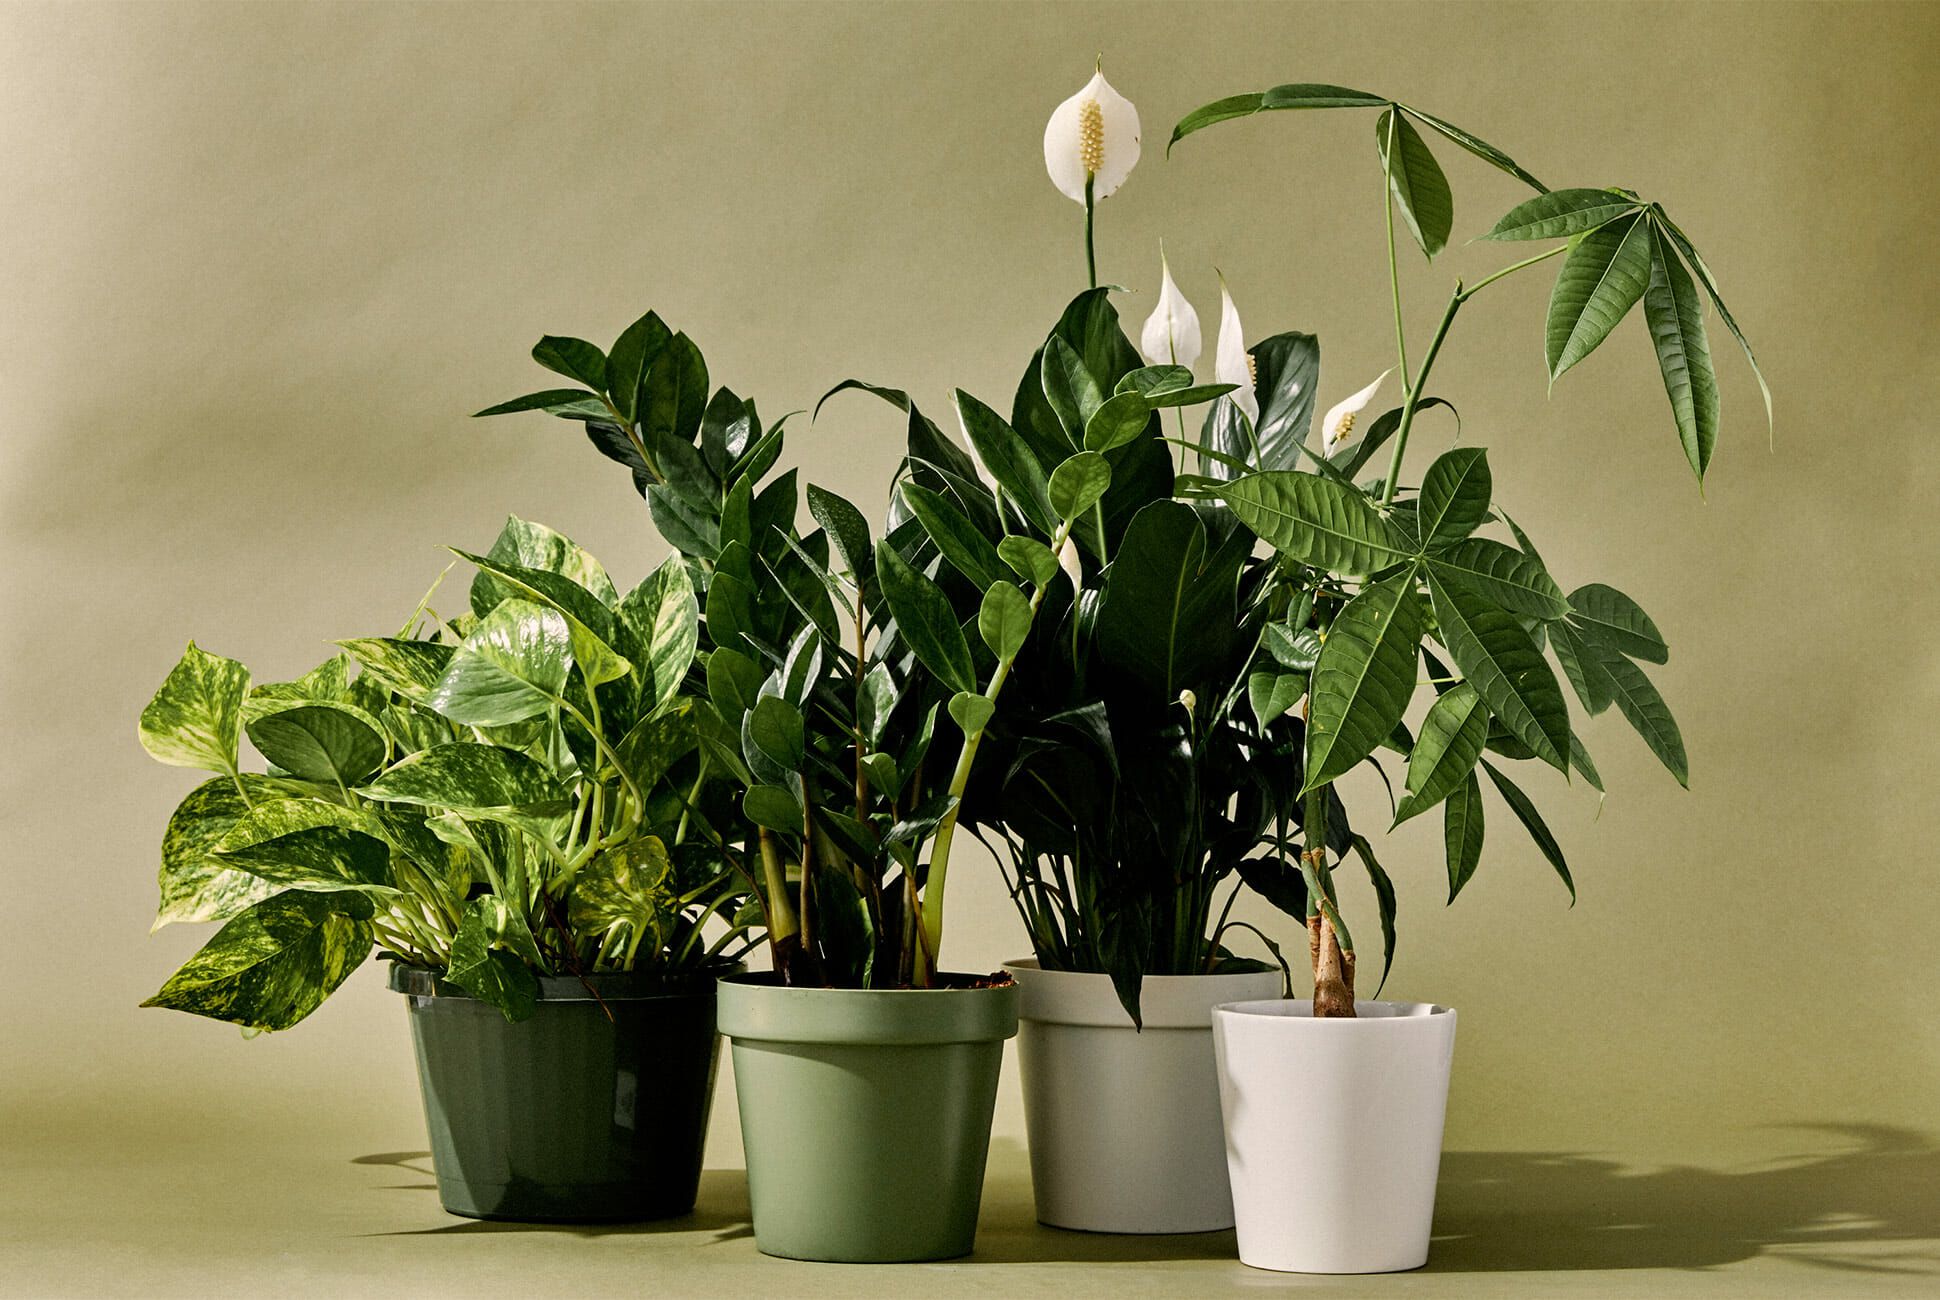 أفضل أنواع النباتات المنزلية سريعة النمو